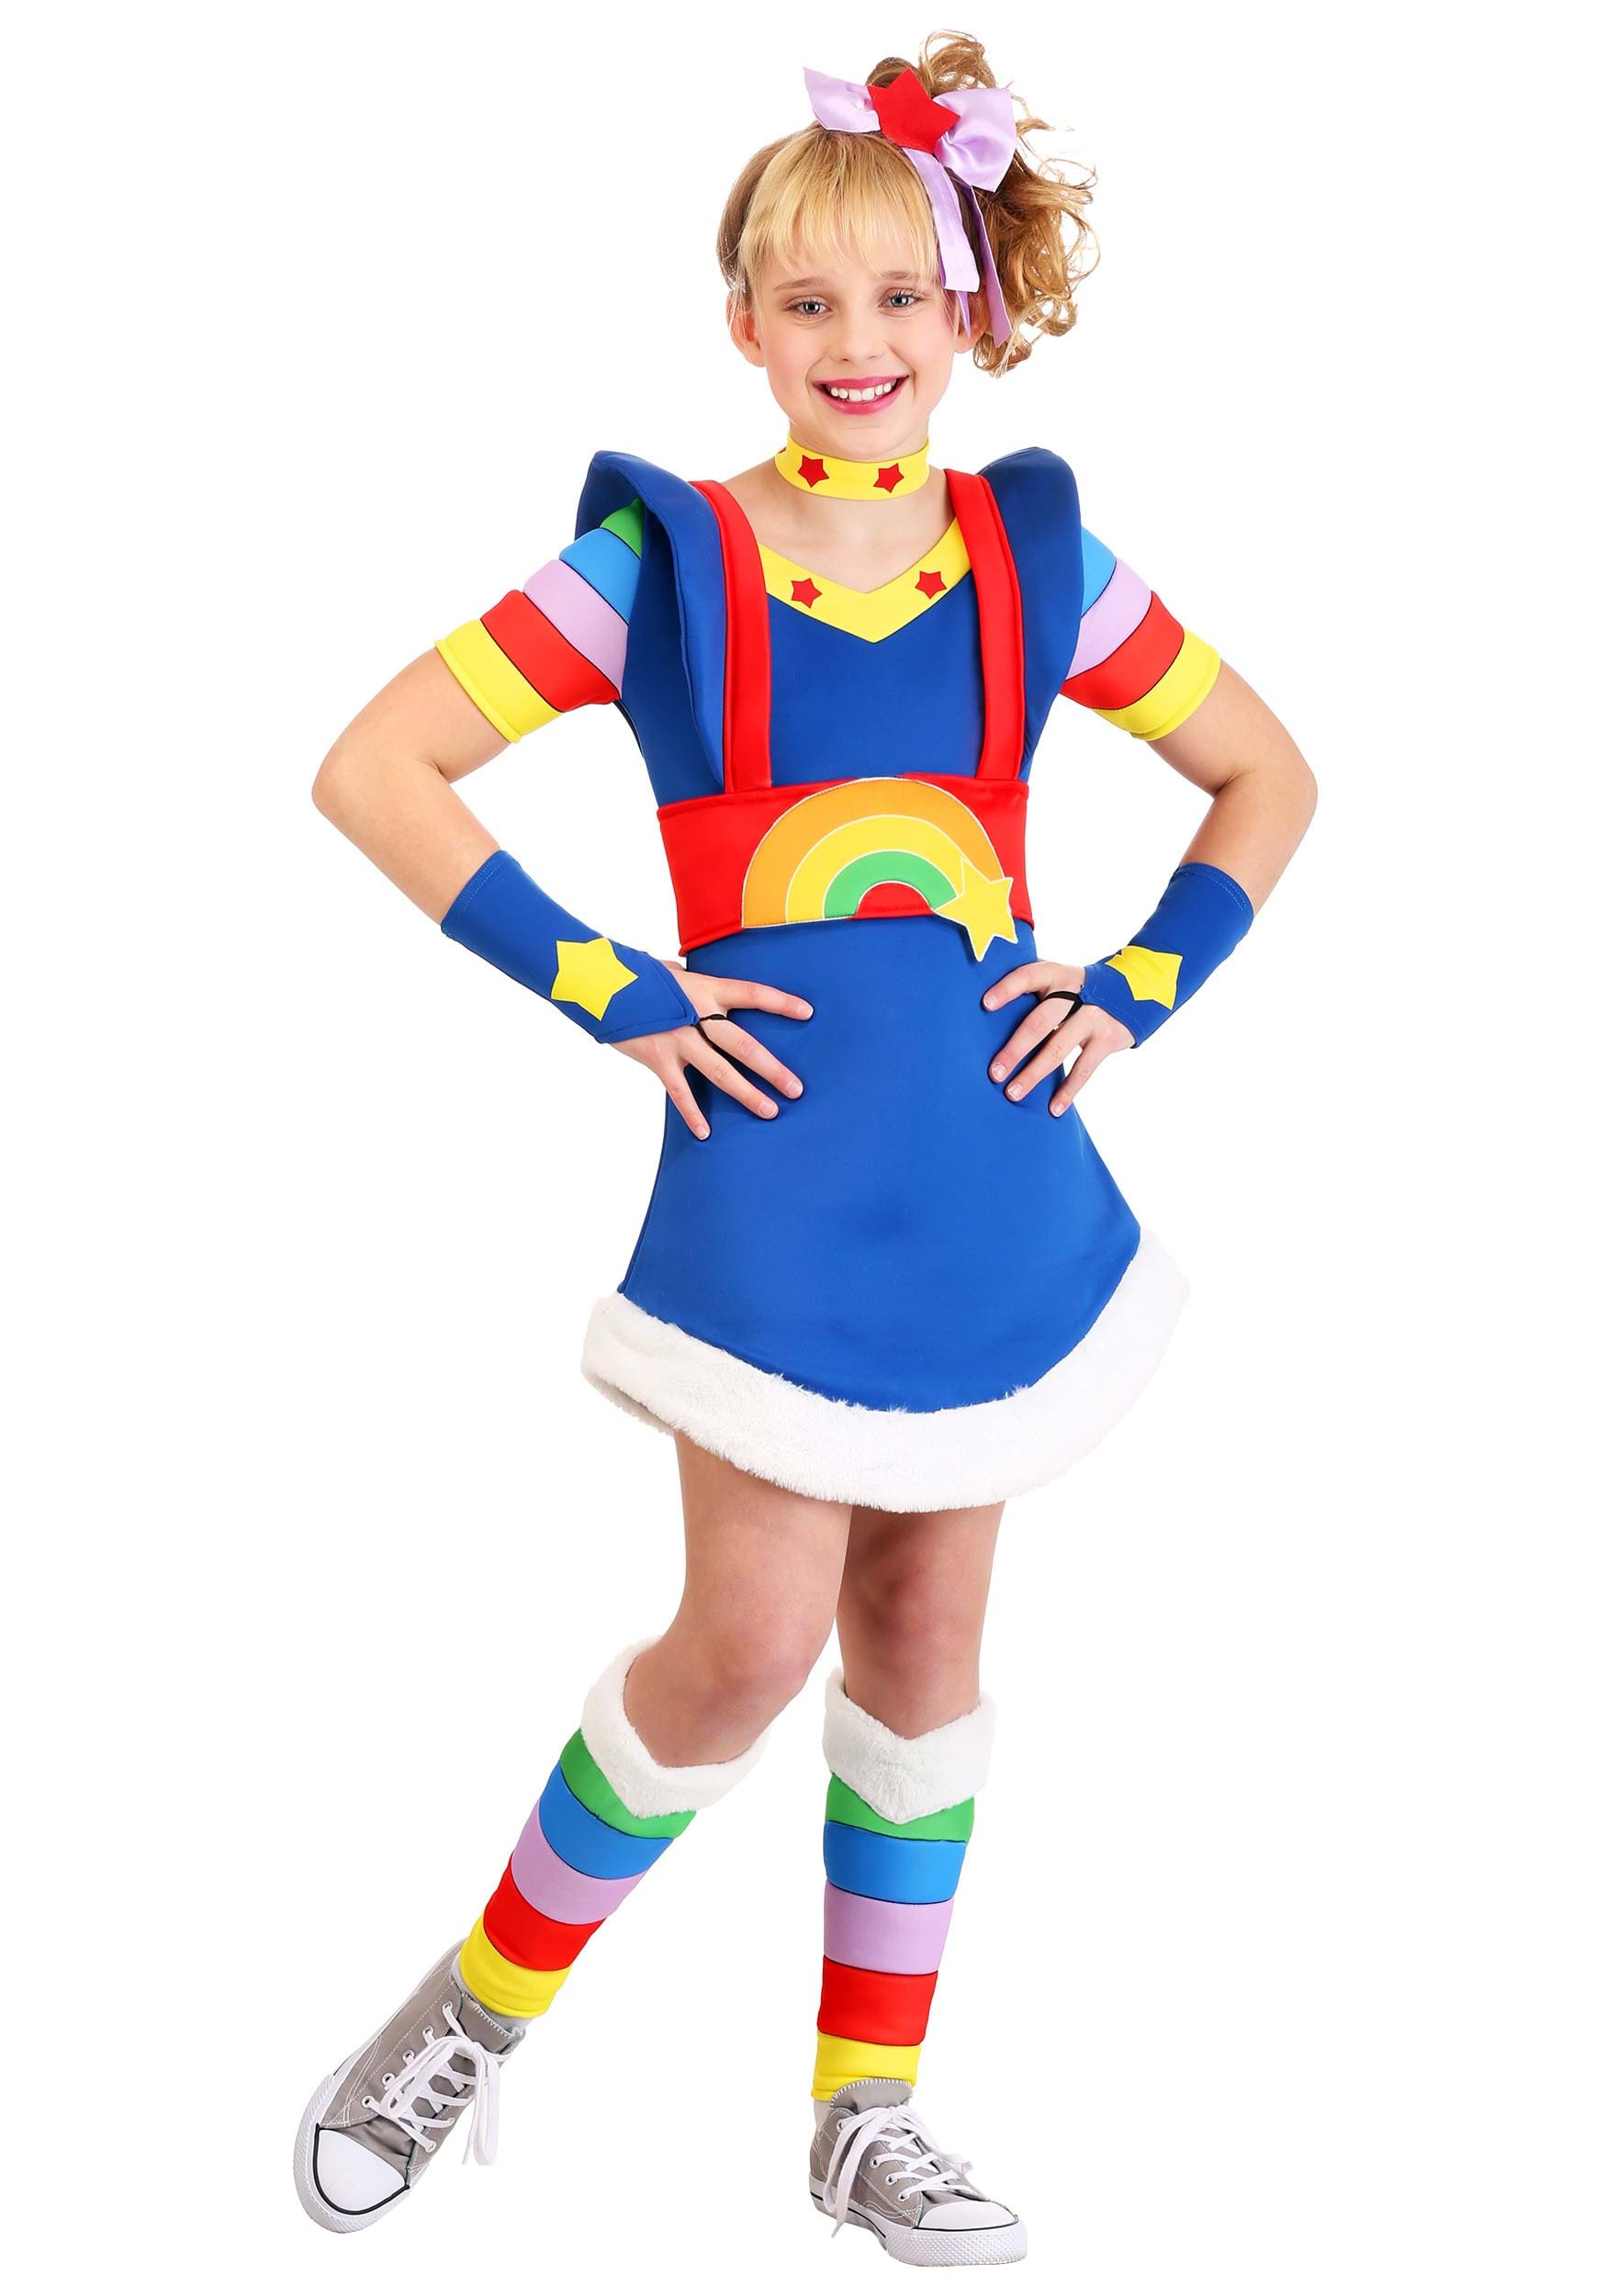 Girls Rainbow Brite Costume